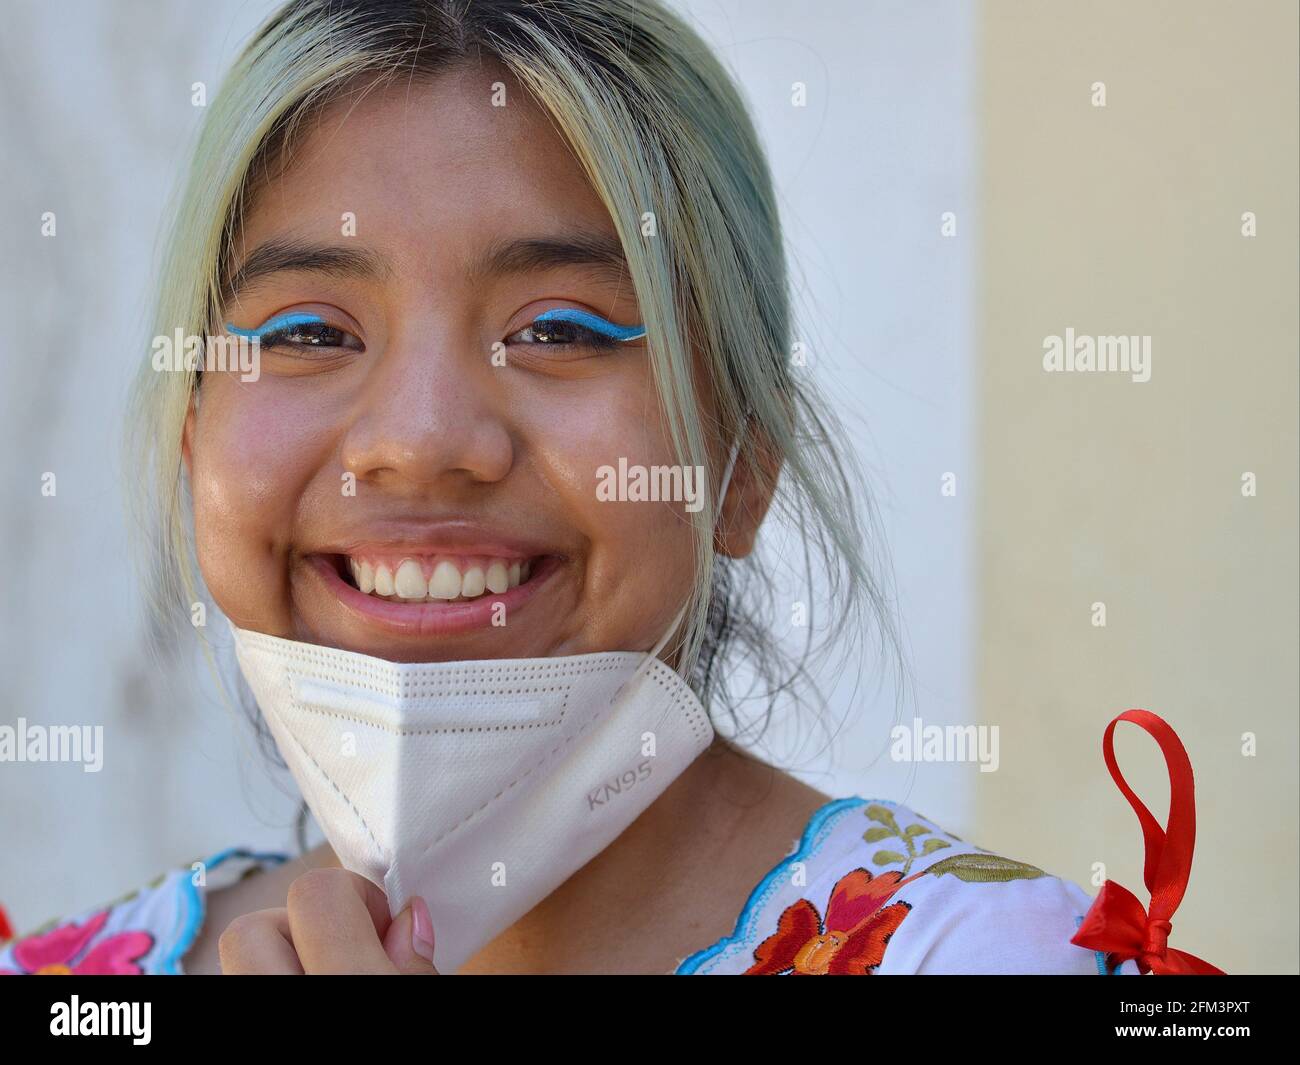 Fröhliches mexikanisches Teenager-Mädchen mit aufwändigem blauem Augen-Make-up zieht ihre weiße KN95-Gesichtsmaske herunter und lächelt während der Coronavirus-Pandemie für die Kamera. Stockfoto